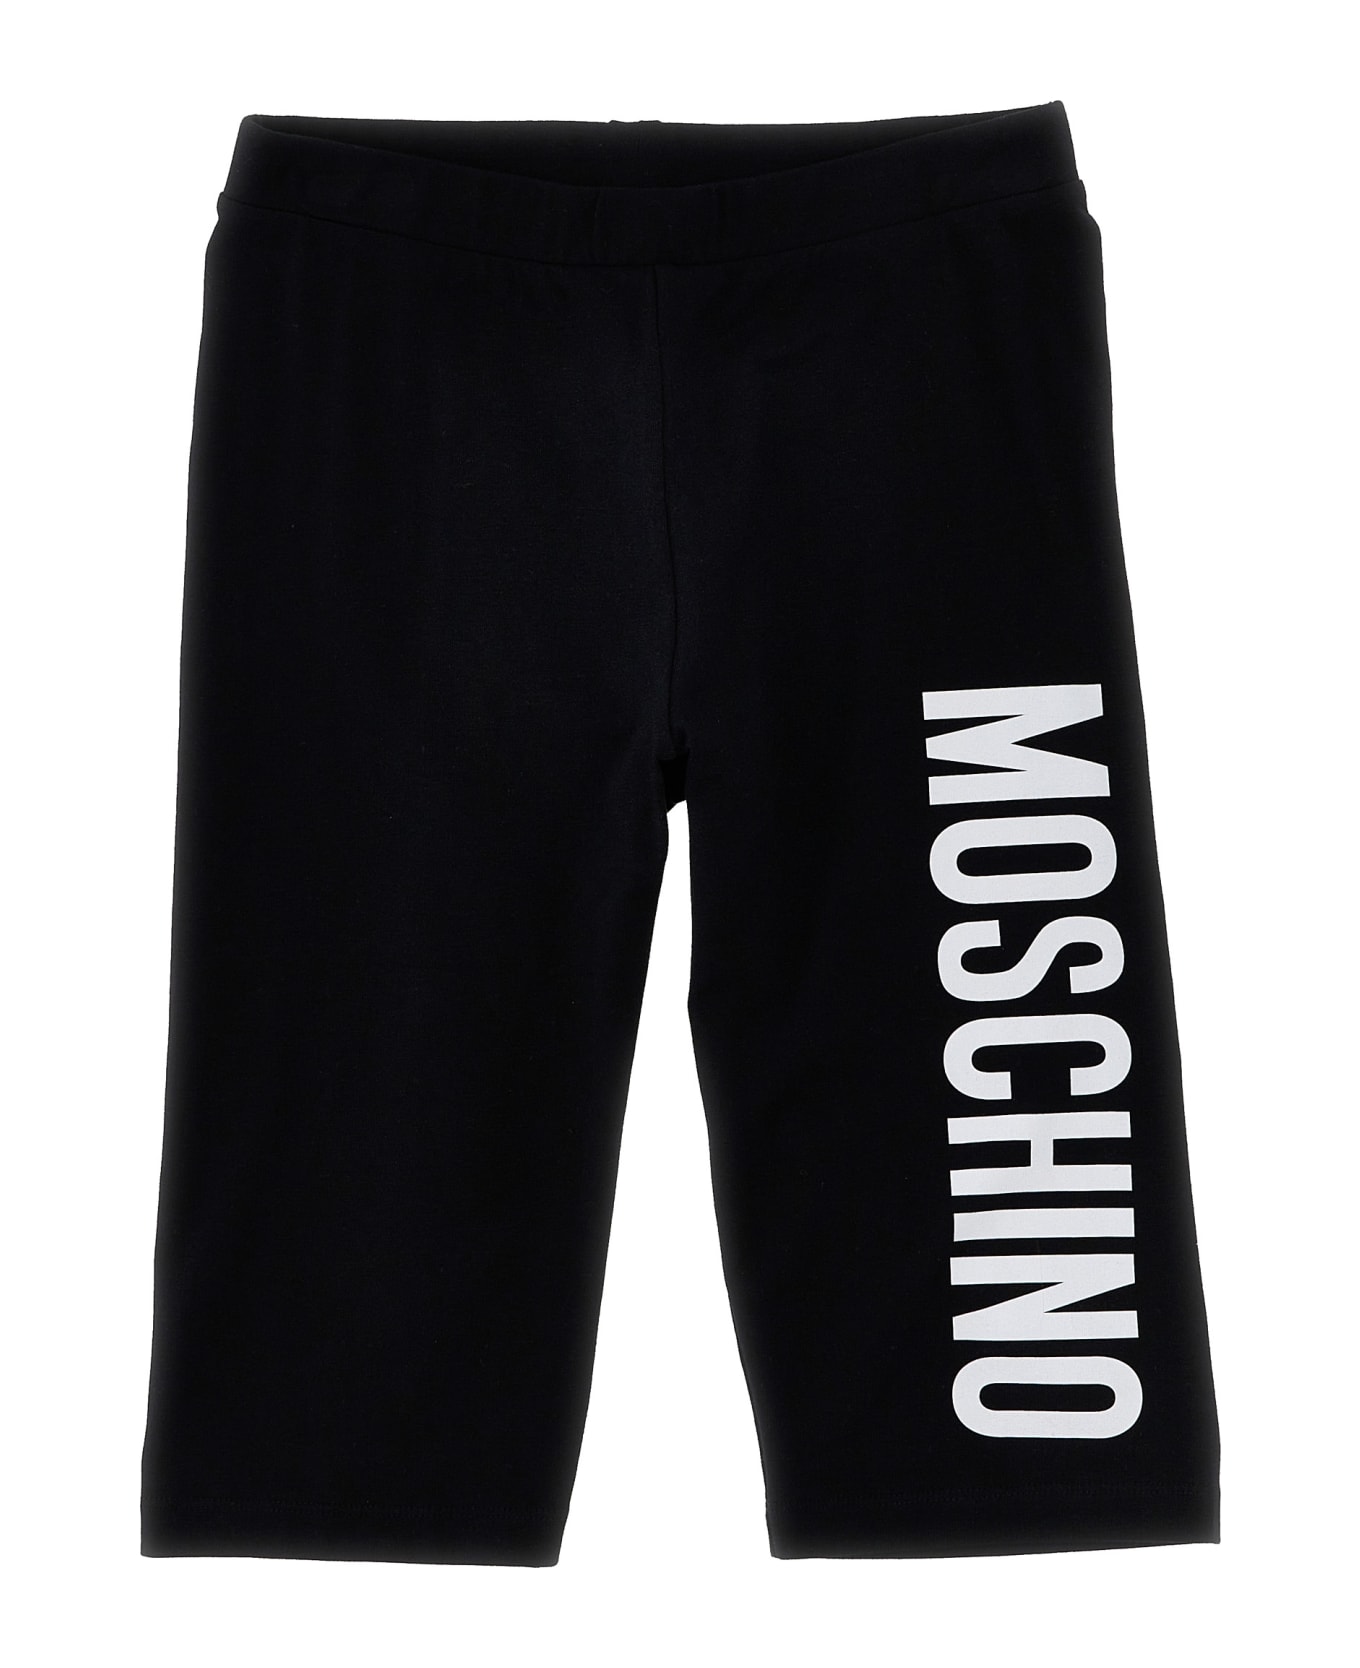 Moschino Logo Print T-shirt + Leggings Set - Pink ワンピース＆ドレス